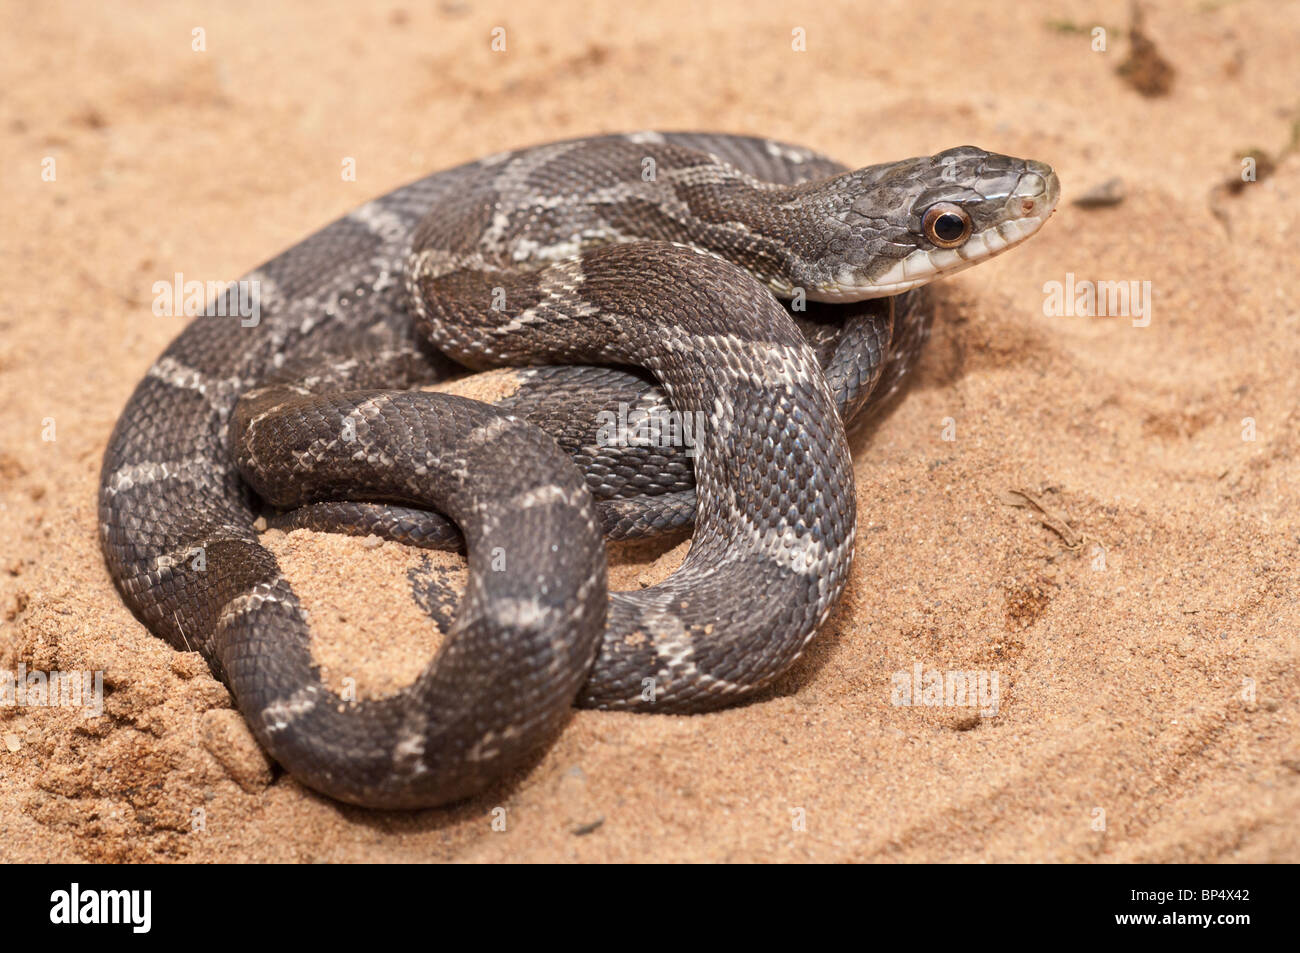 Texas rat snake, Elaphe obsoleta lindheimeri, native to Texas Stock Photo: 30841106 ...1300 x 953